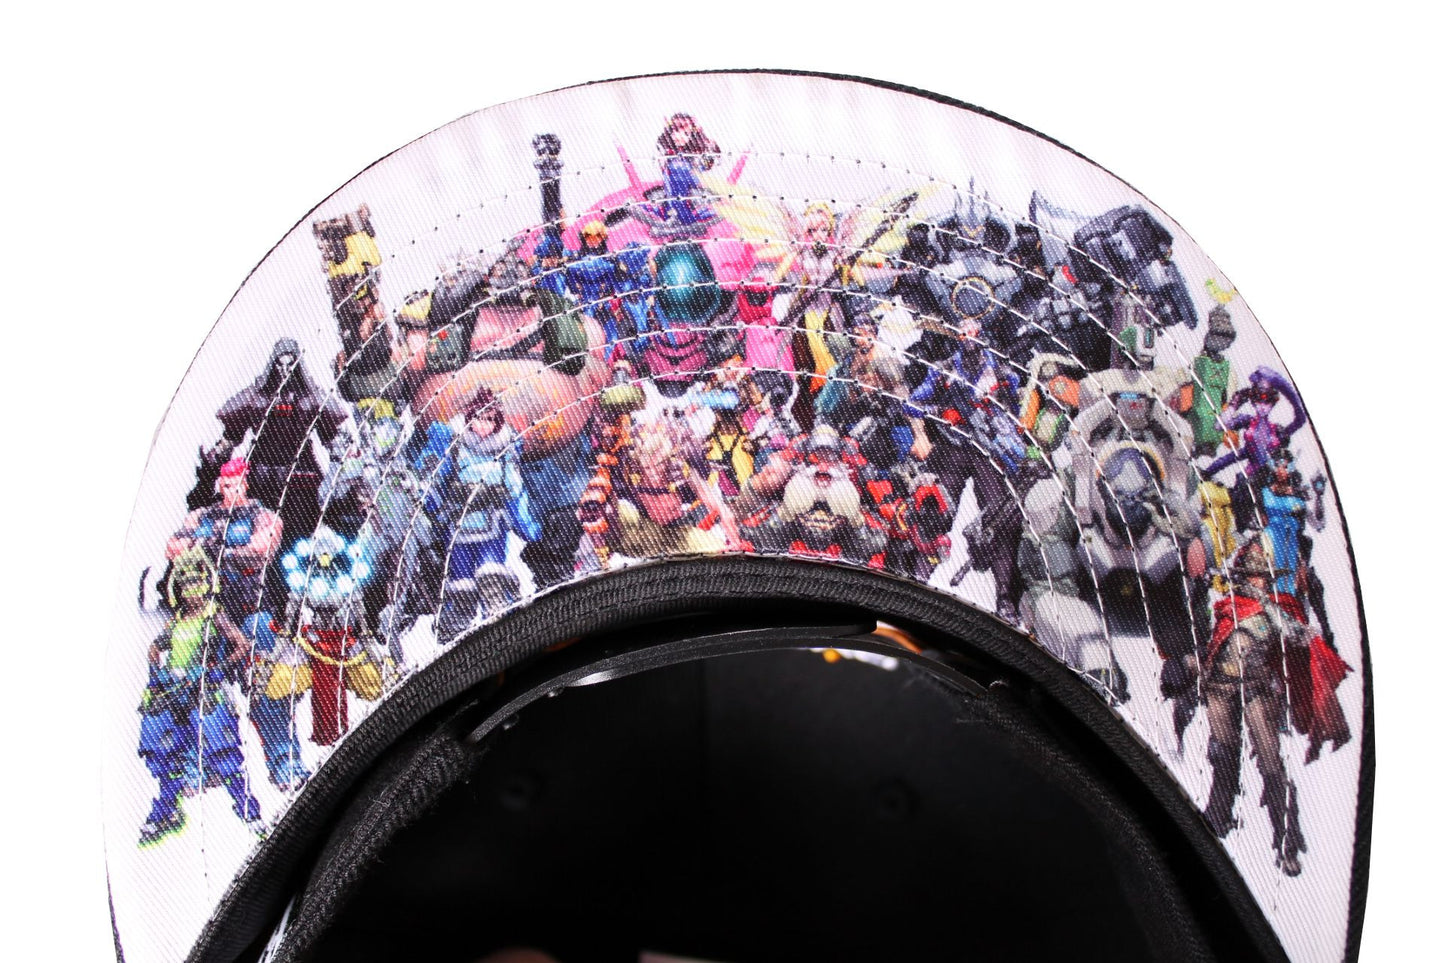 Overwatch Cap - OW Heroes Hat